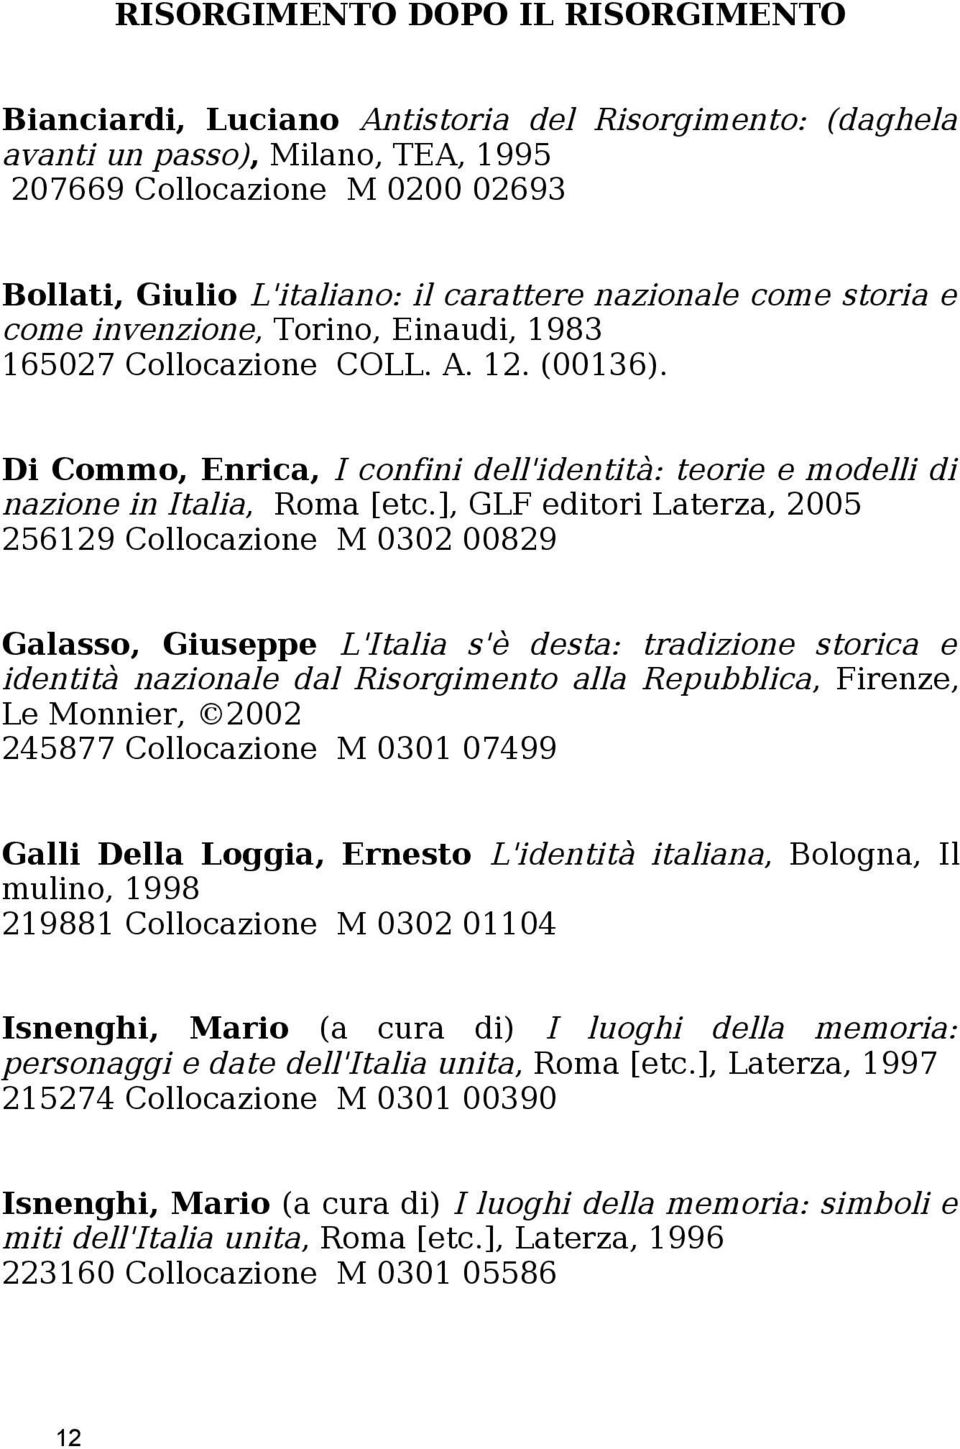 Di Commo, Enrica, I confini dell'identità: teorie e modelli di nazione in Italia, Roma [etc.